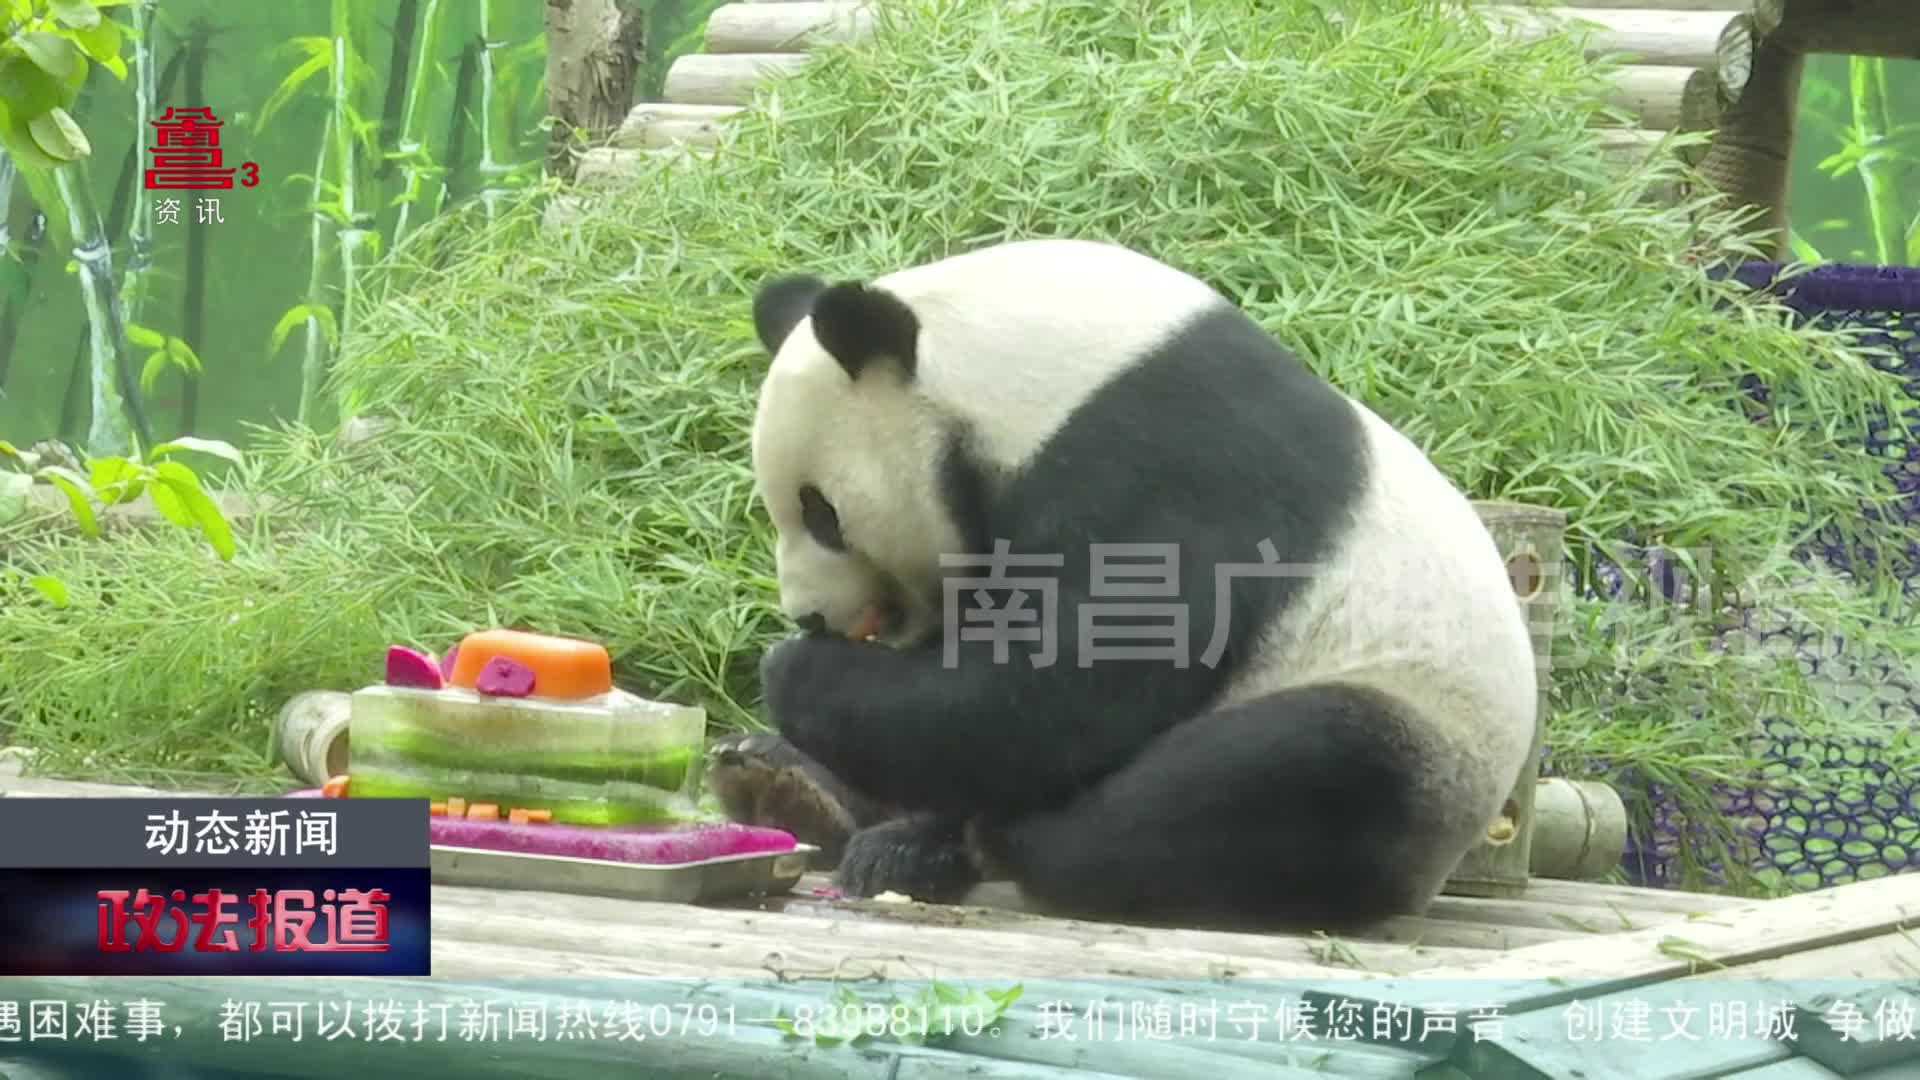 大熊猫美灵过19岁生日 吃蛋糕收礼物乐享老年生活